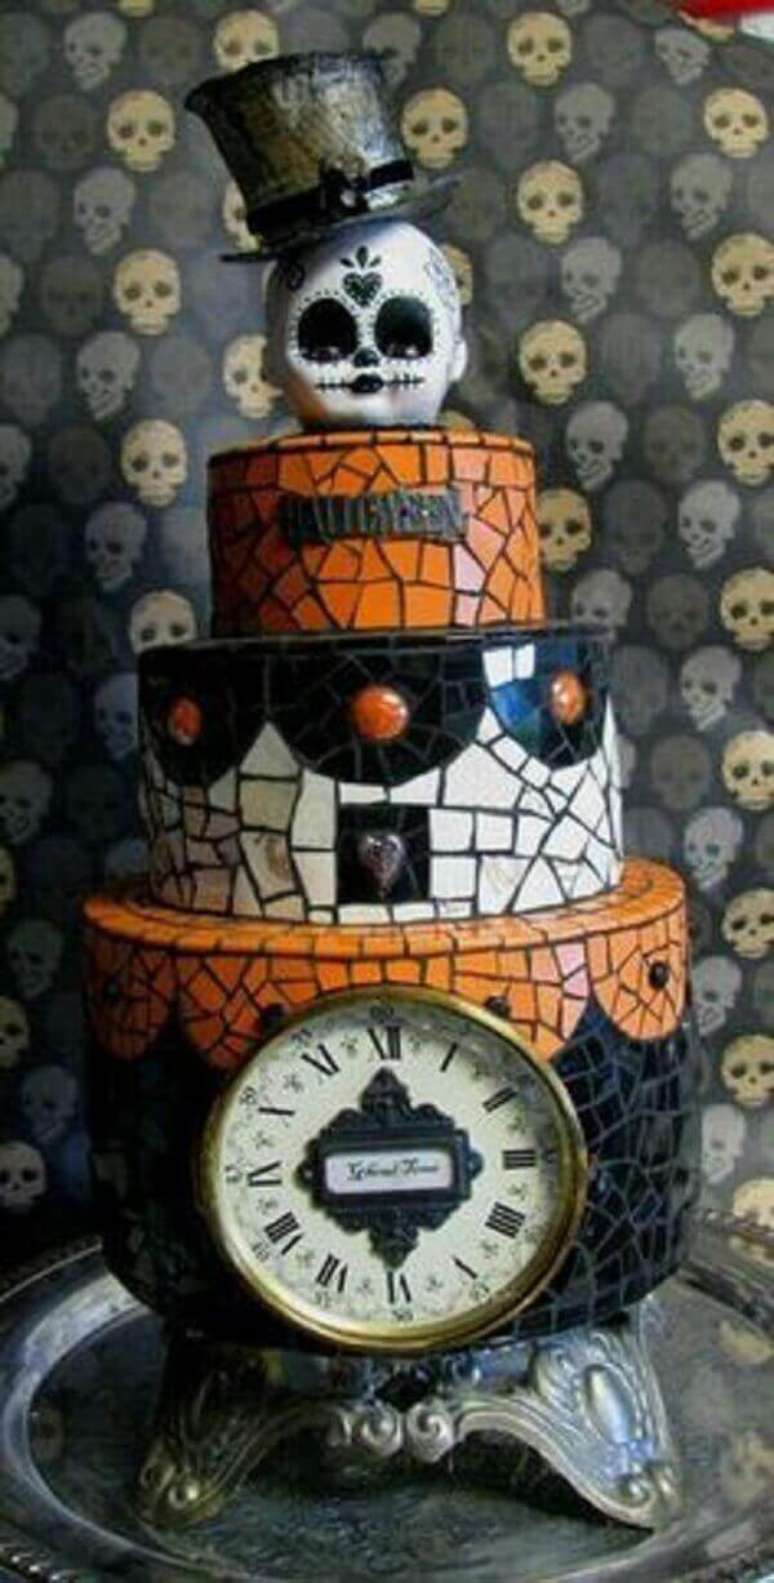 50. Bolo de Halloween de três andares com design assombroso. Fonte: Pinterest